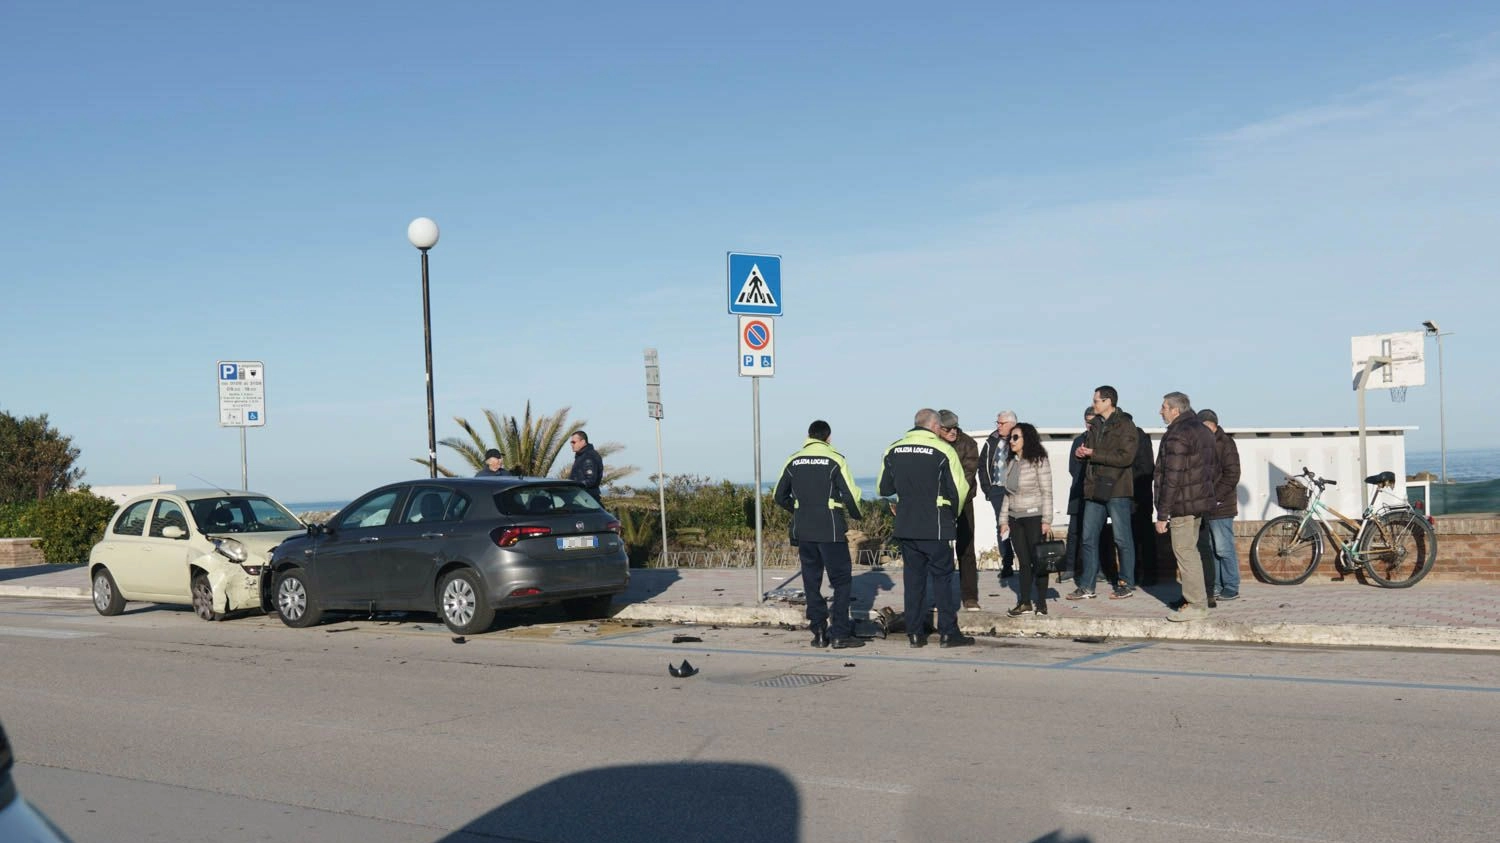 Le auto danneggiate a causa del folle inseguimento (foto Zeppilli)